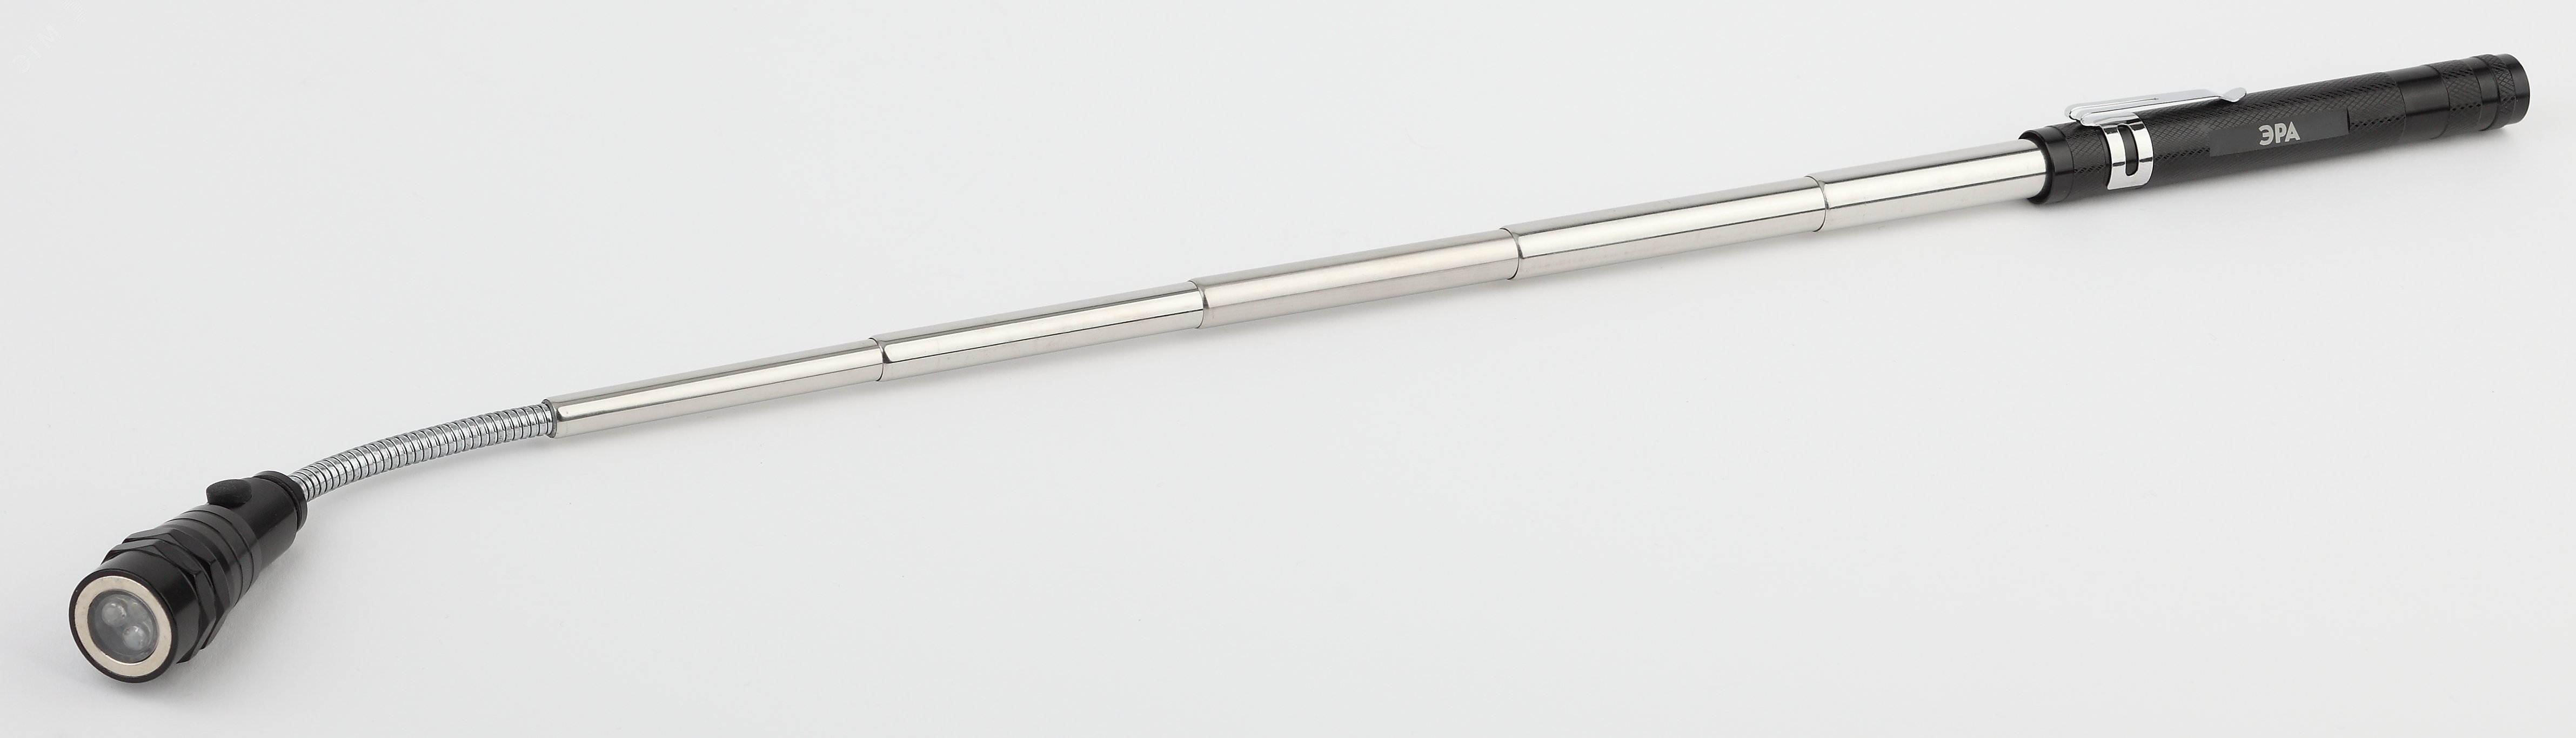 Фонарик на батарейках 4хLR44, ударопрочный, телескопическая ручка 40 см, регулируемый угол, магнитный RB-602 Практик Б0033748 ЭРА - превью 4